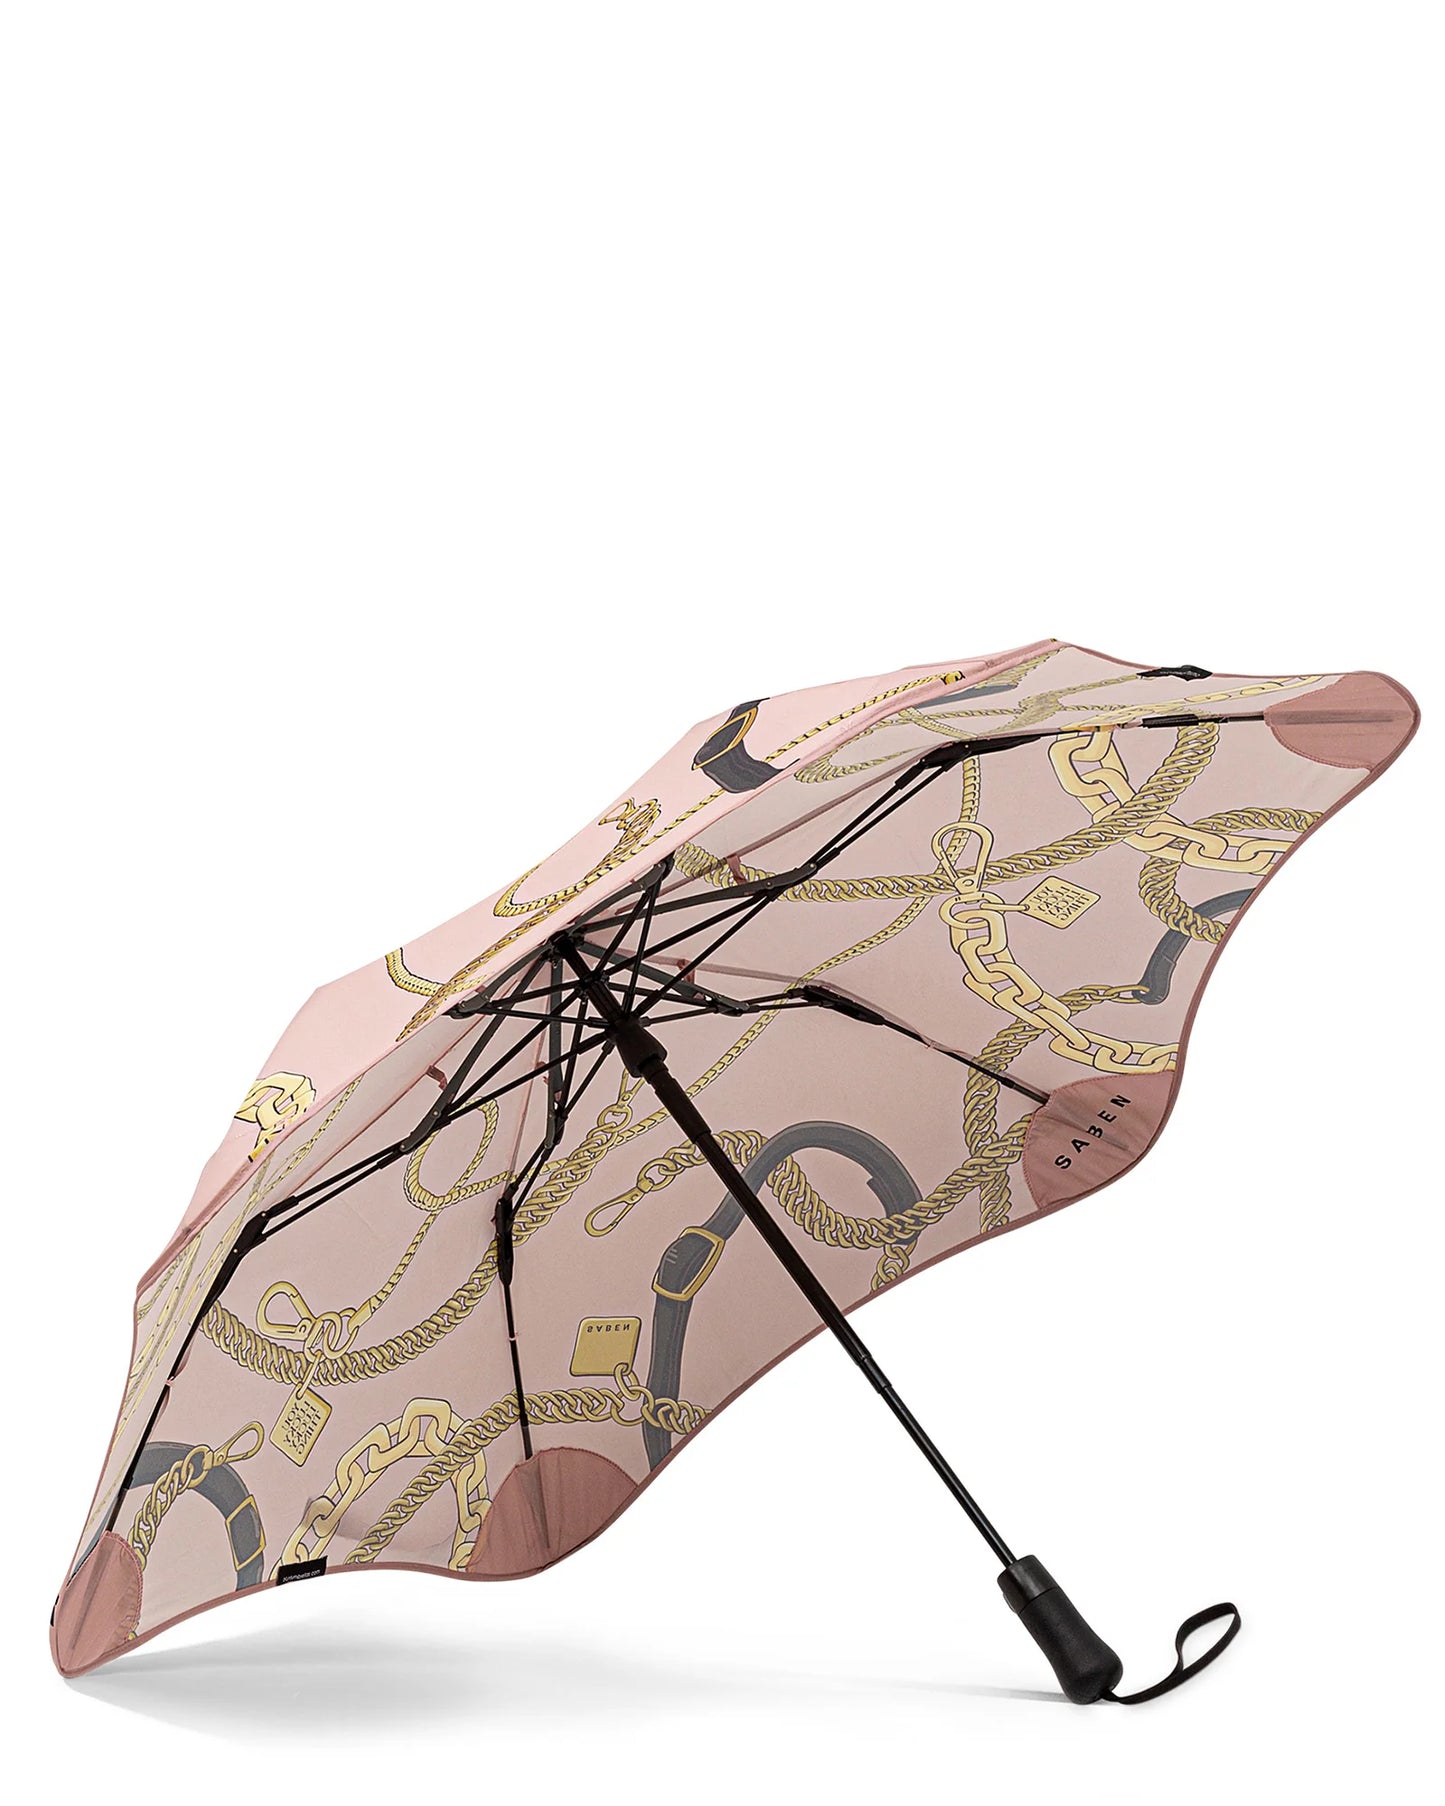 SABEN x BLUNT // Metro Umbrella PINK CHAIN